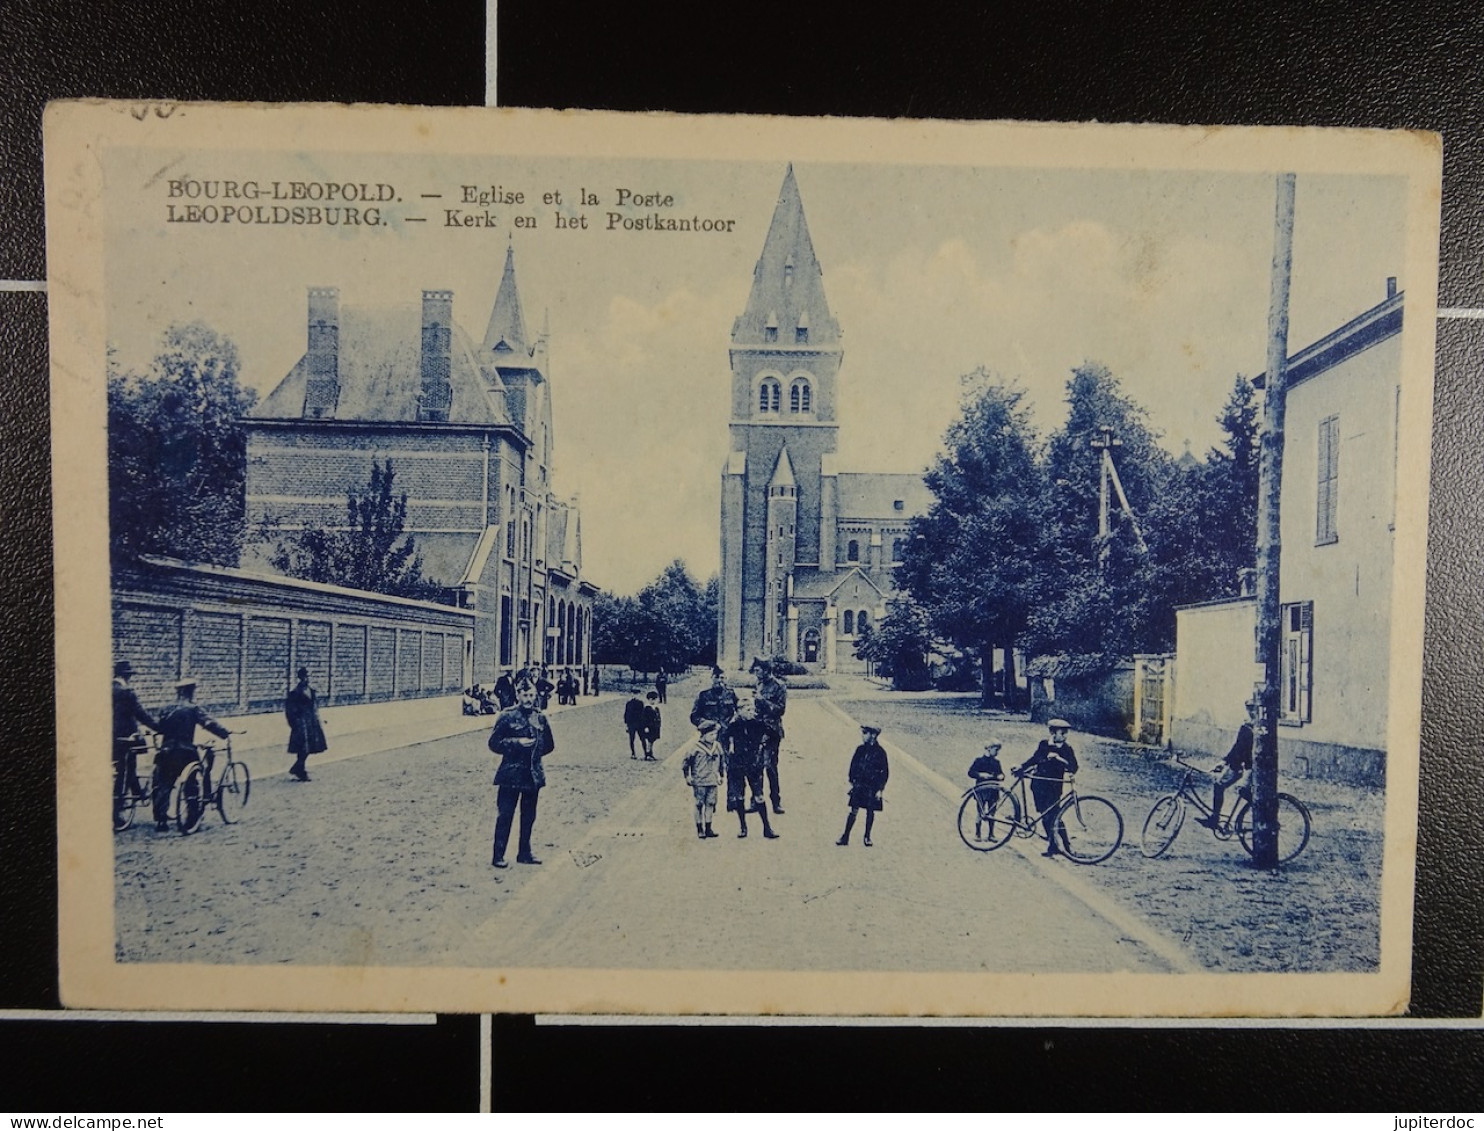 Bourg-Léopold Eglise Et La Poste - Leopoldsburg